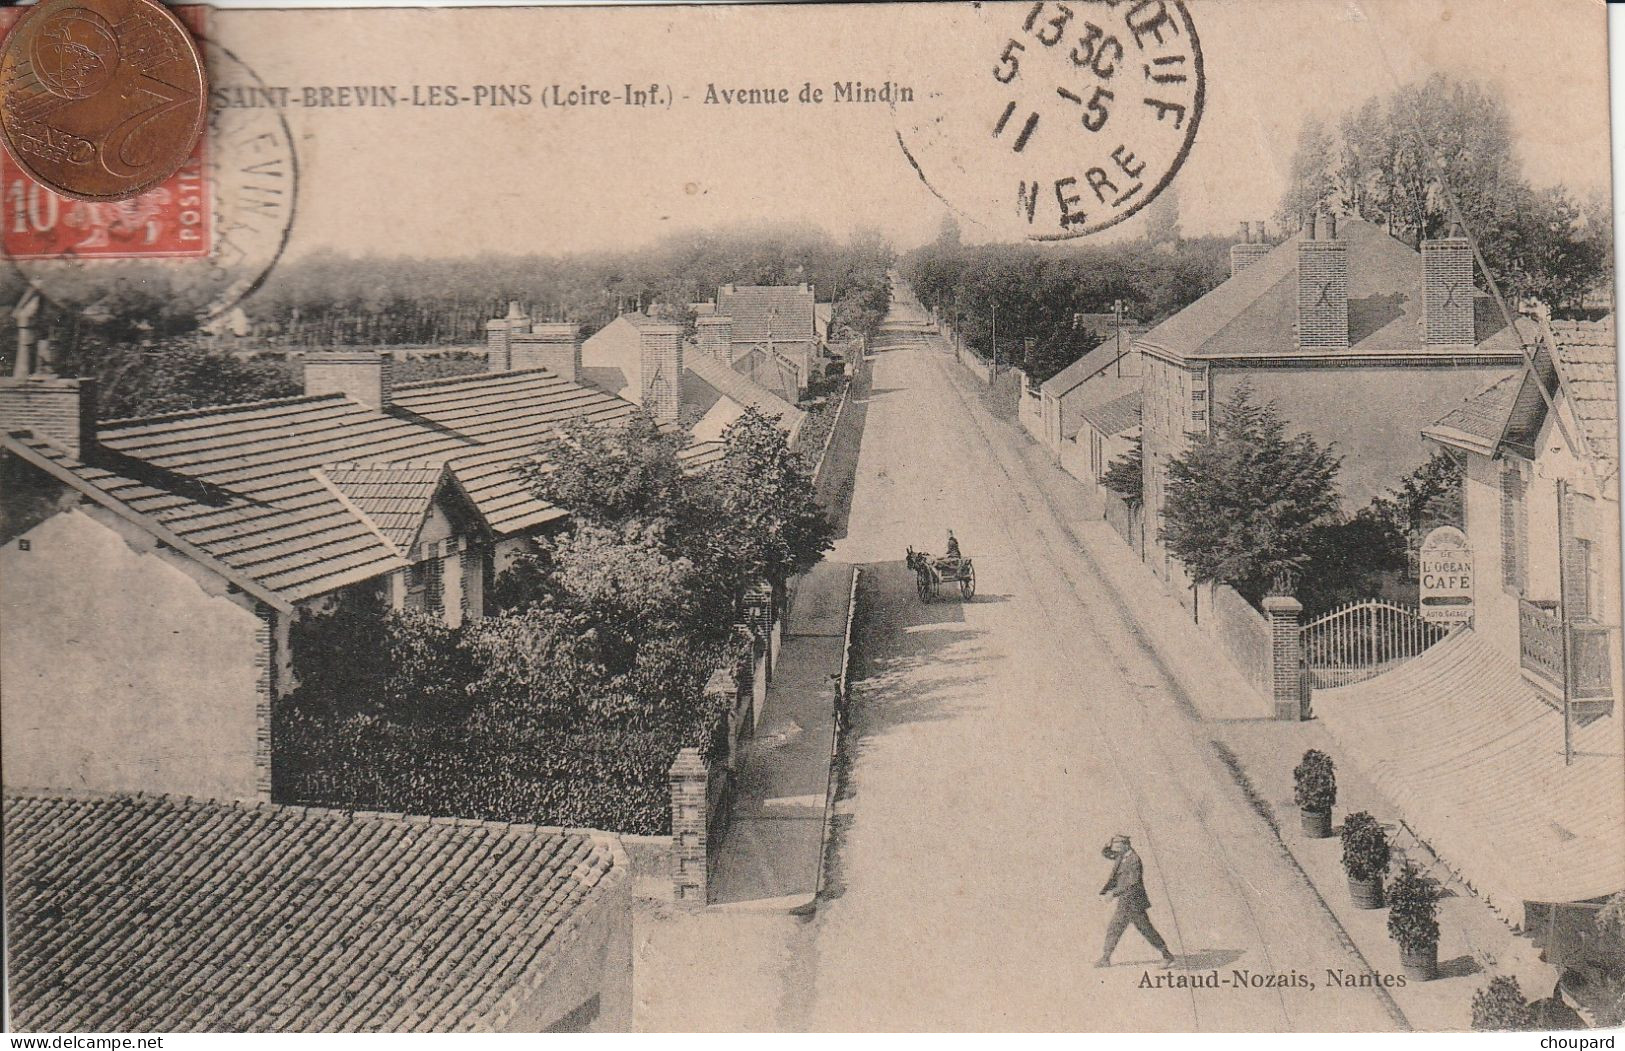 44 - Carte Postale Ancienne De  SAINT BREVIN LES PINS    Avenue De Mindin  Vue Aérienne - Saint-Brevin-les-Pins